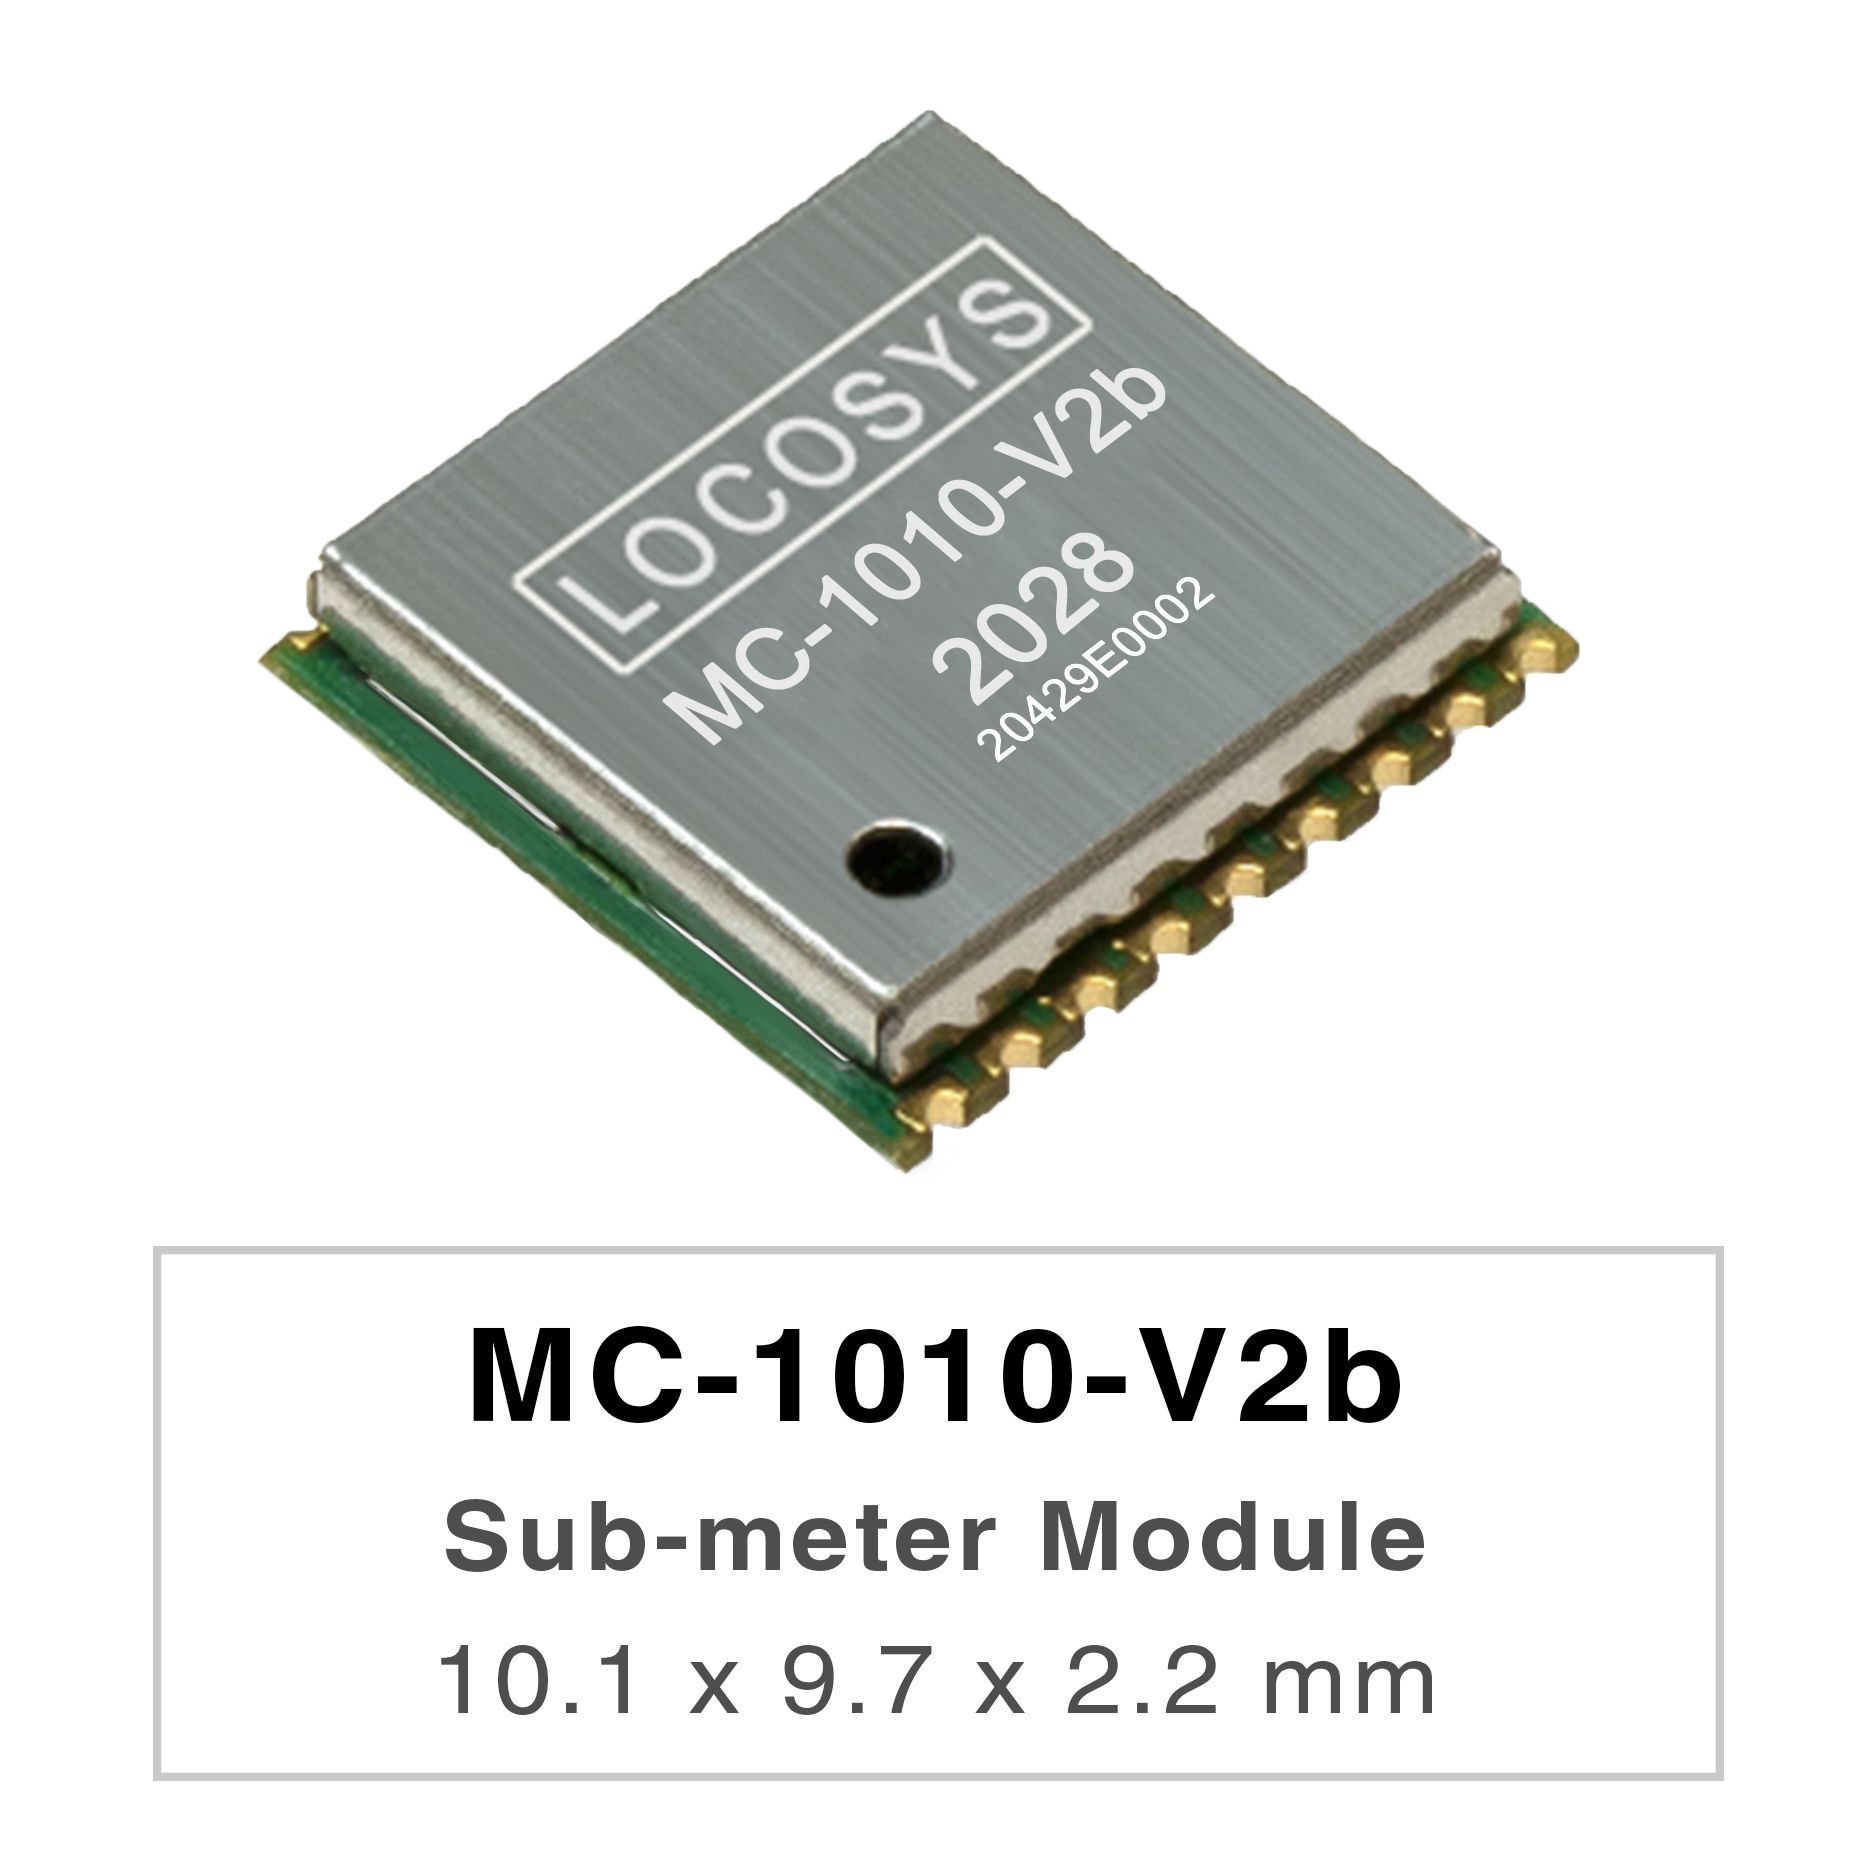 <br />LOCOSYS MC-1010-Vxx シリーズは、すべての地球規模の民間ナビゲーション システムを追跡できる
    高性能デュアルバンド GNSS 測位モジュール
    です。12 nm プロセスを採用し、効率的な
    <br />電力管理アーキテクチャを統合して、低電力と高感度を実現します。